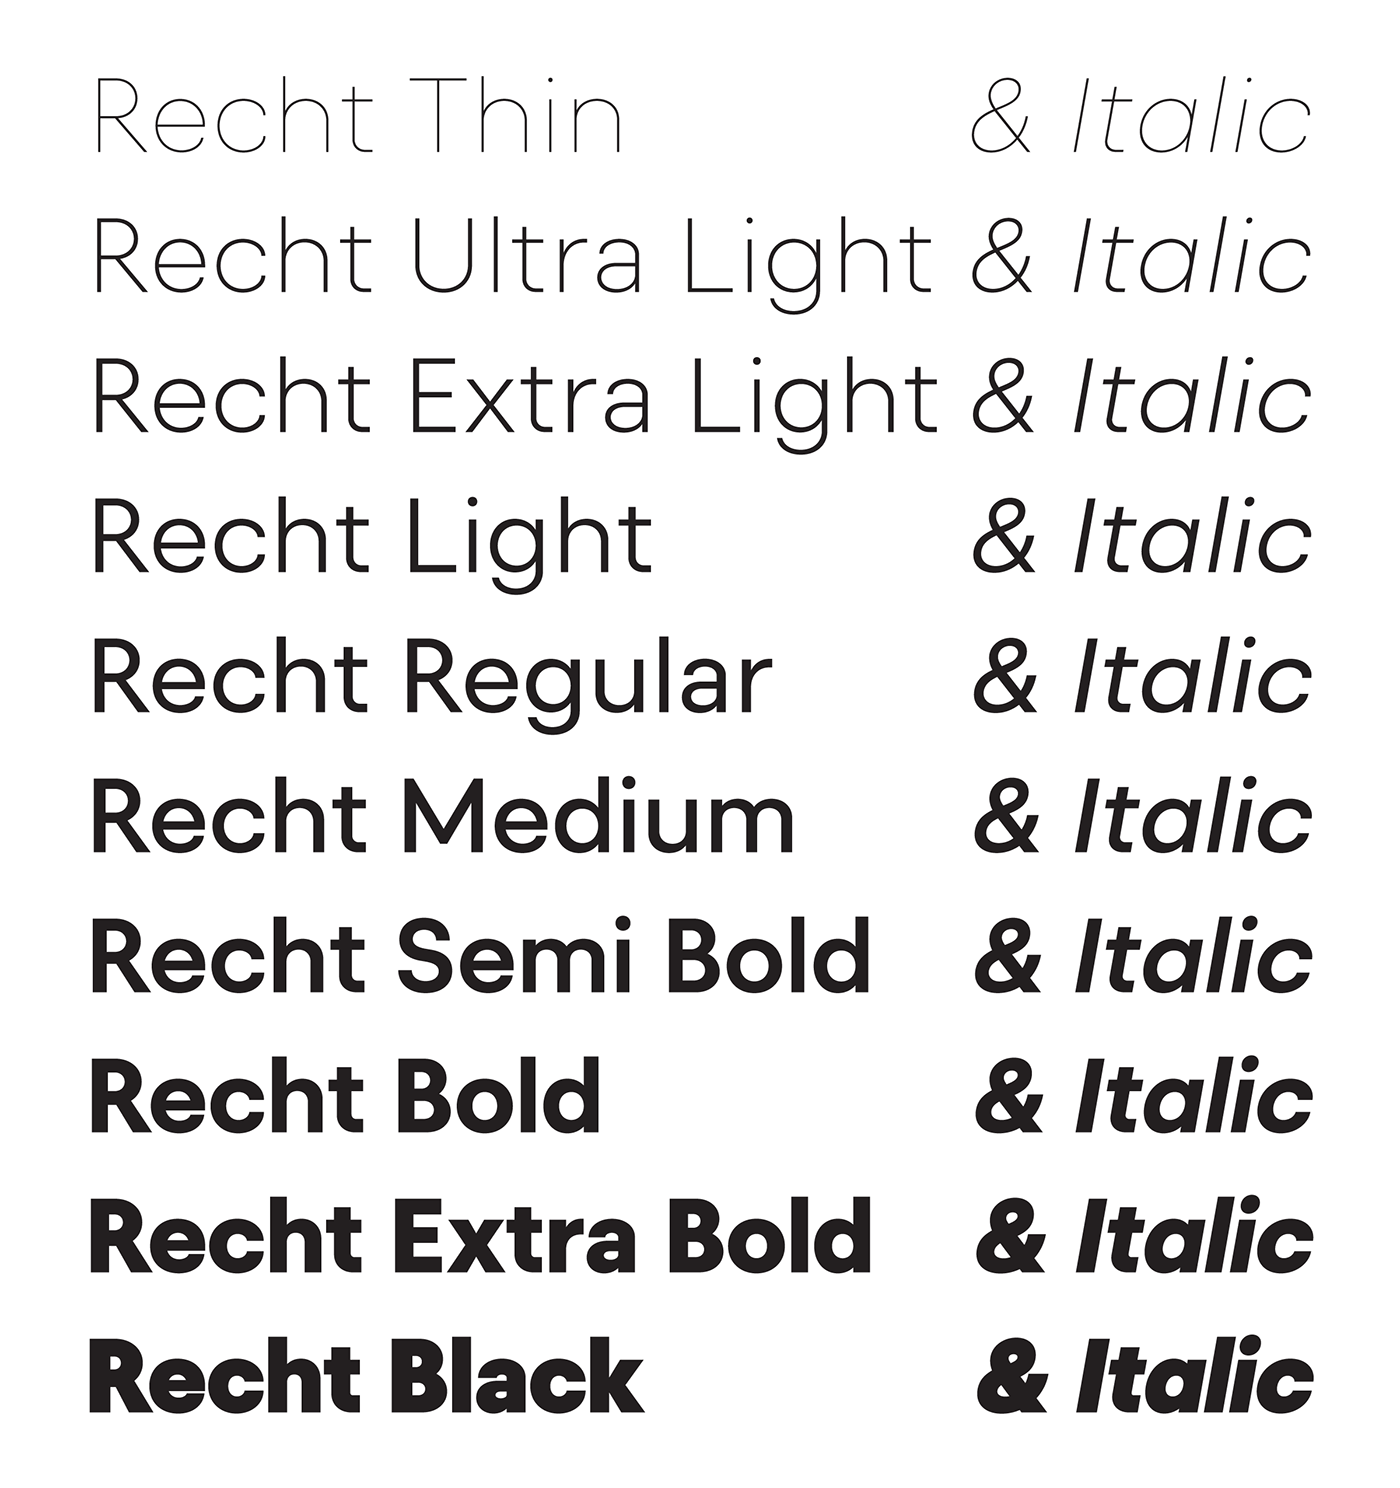 Typeface sans sans-serif typeface design font type design geometric